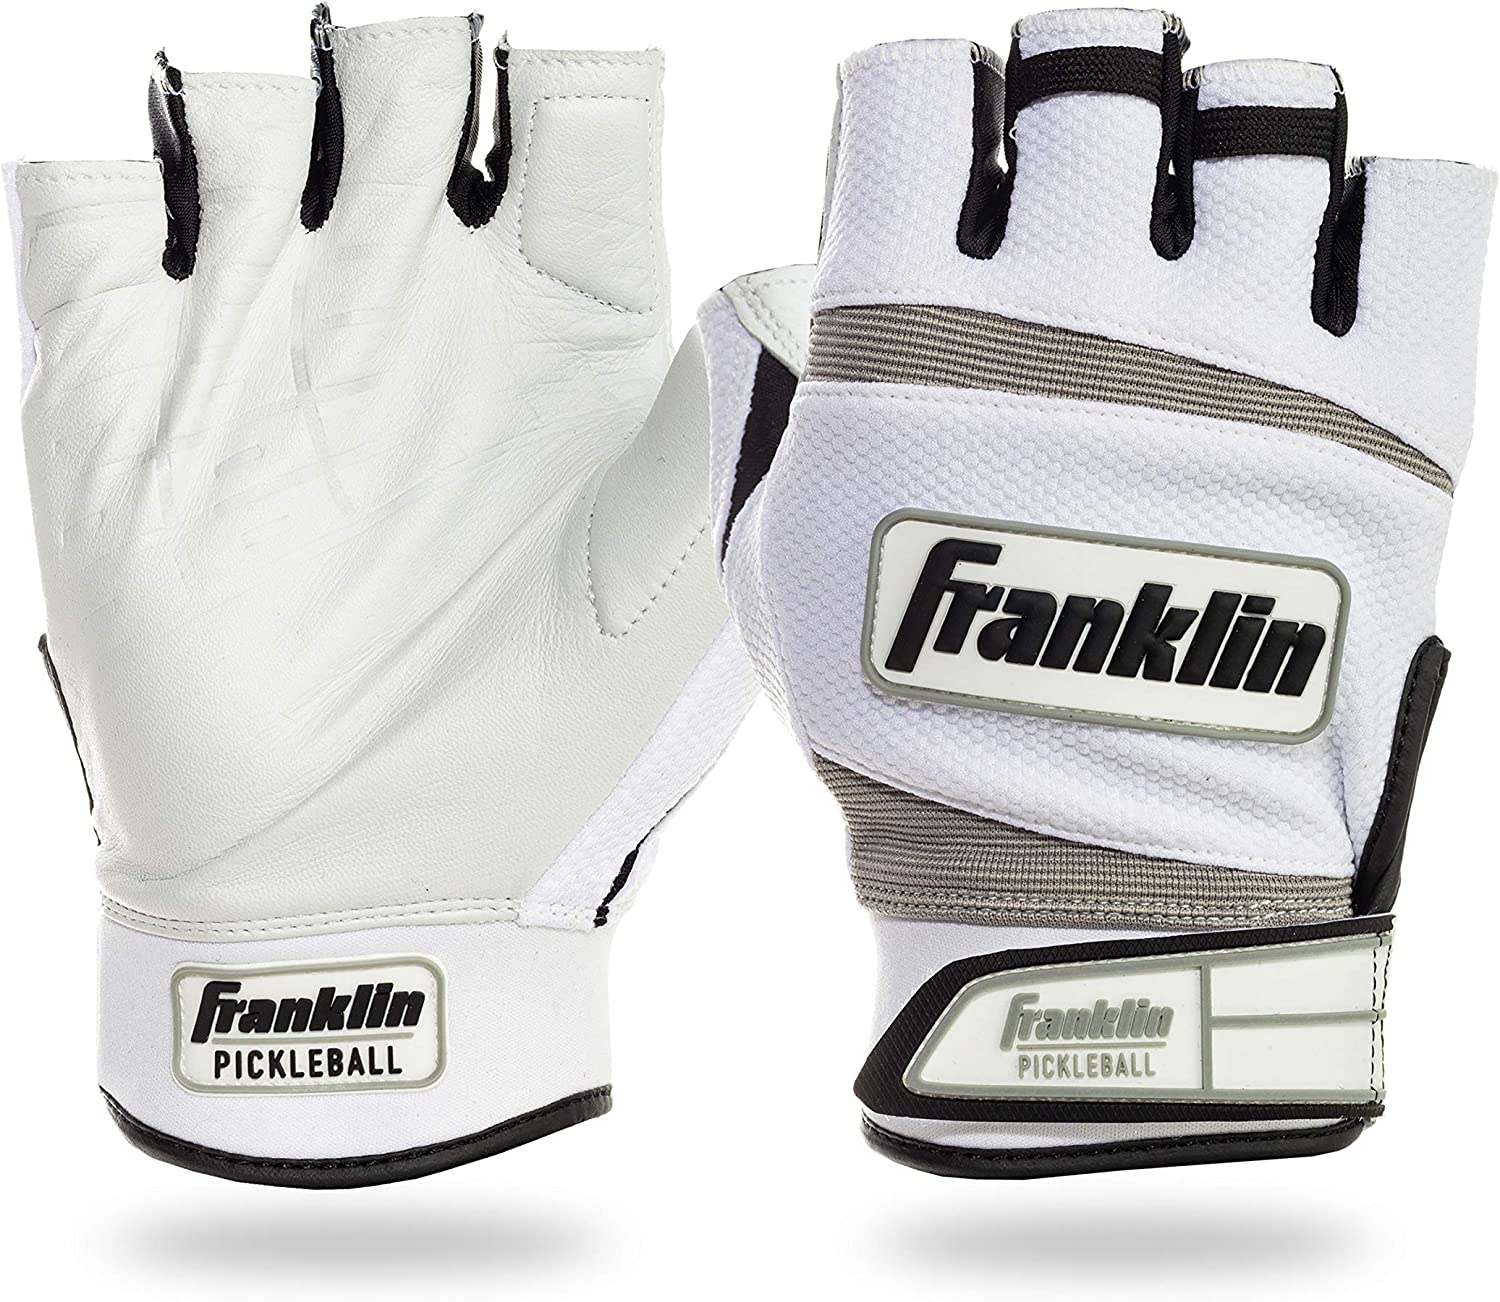 Franklin Sports Pickleball Single Glove reviews